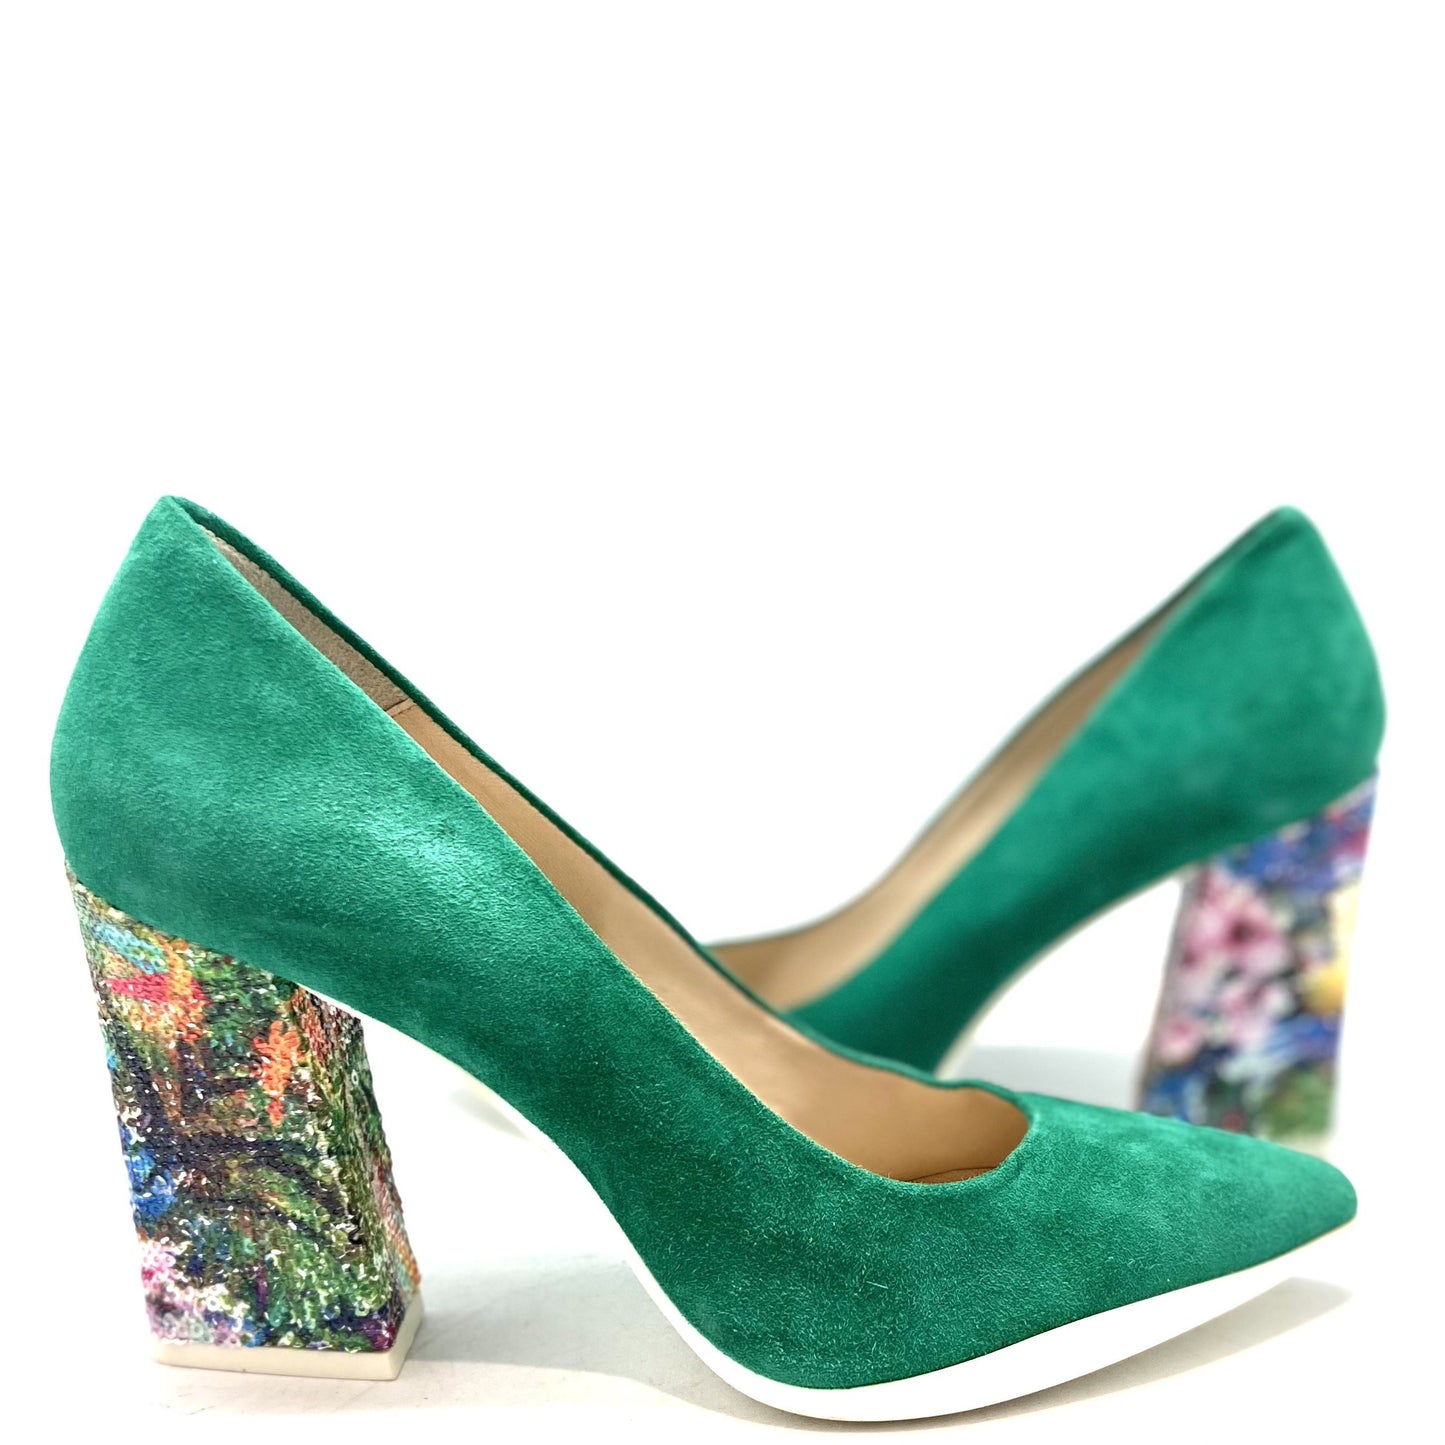 Pailette - Kelly Green high heel shoe